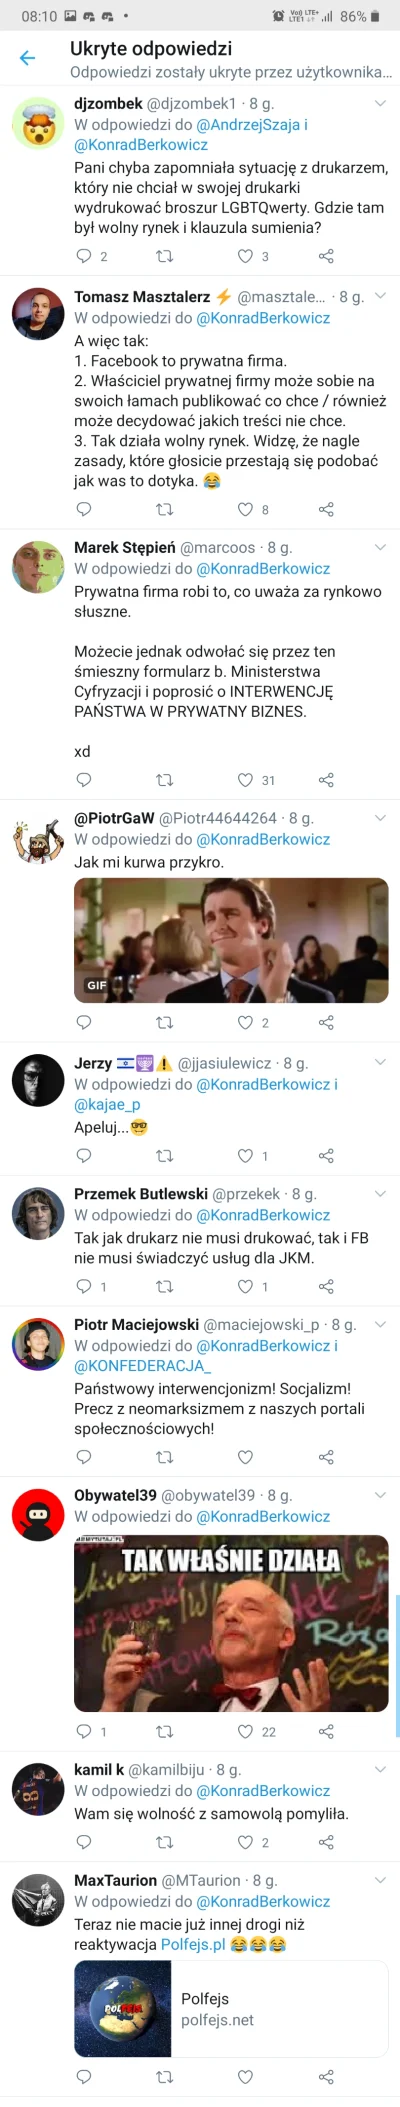 Soojin21 - Próbka komentarzy, które Konrad Berkowicz ukrył pod tym tweetem. 

SPOILER...